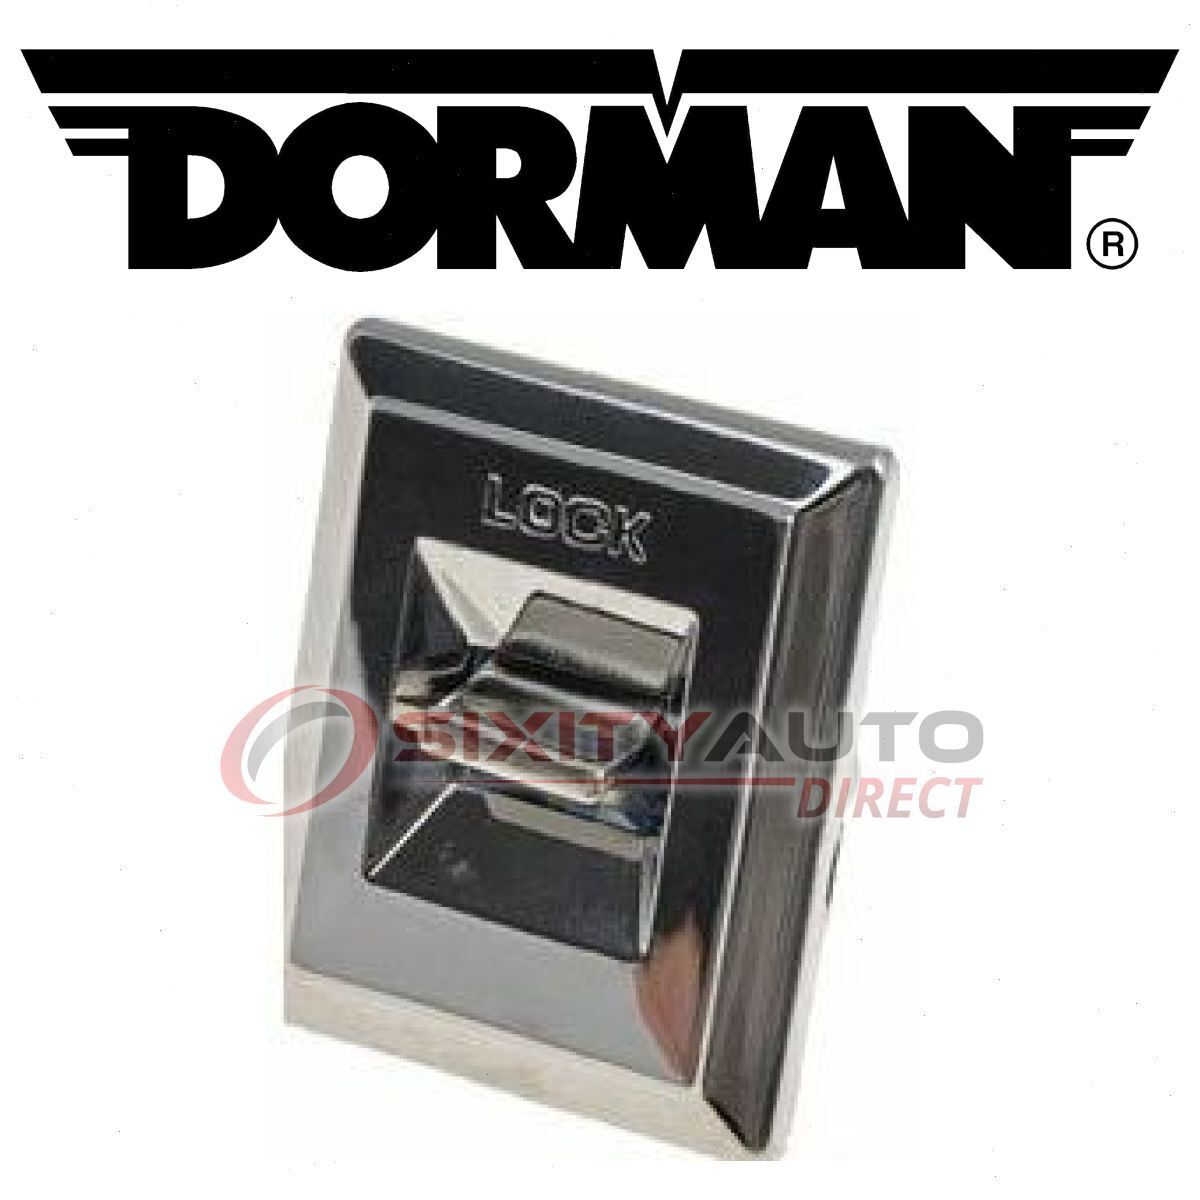 Dorman Front Left Door Lock Switch for 1978-1984 Oldsmobile Cutlass Calais rf